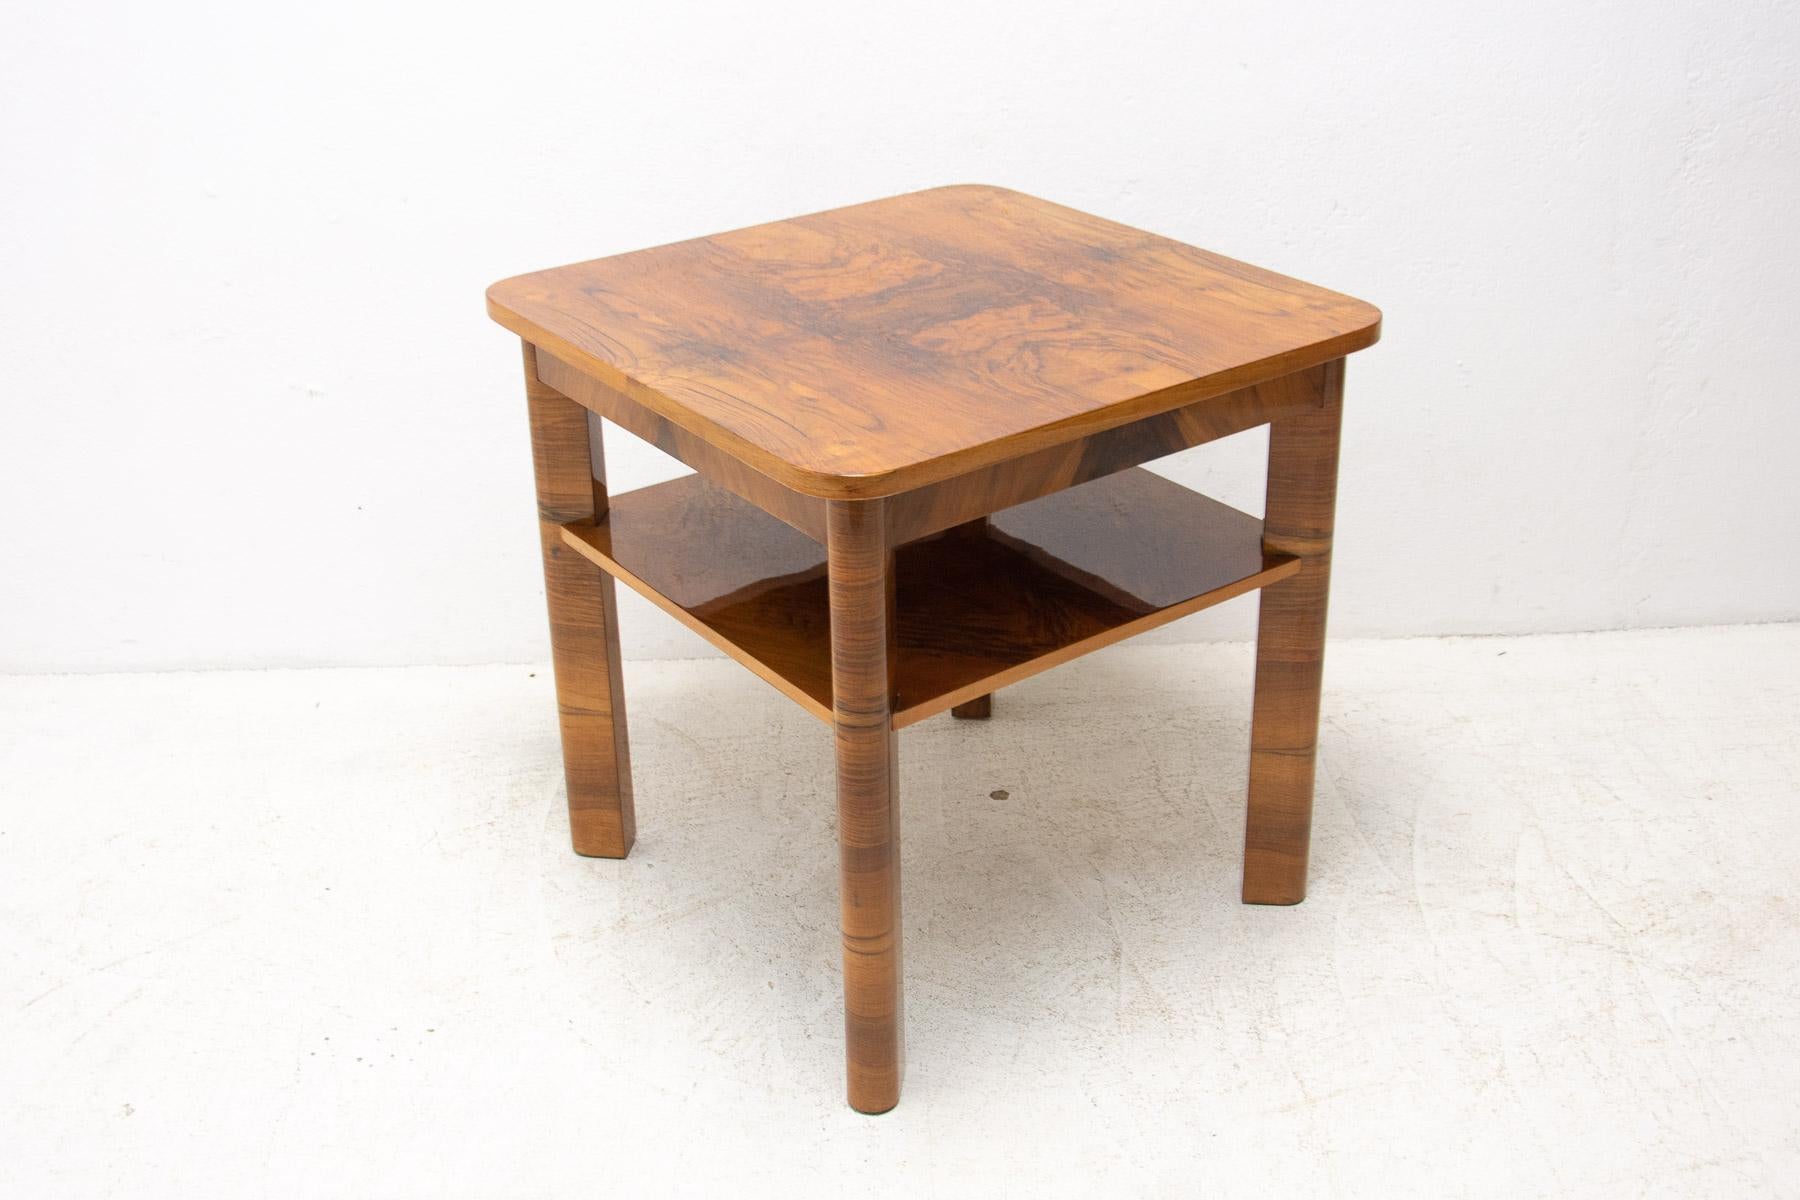 Cette table basse Art déco a été fabriquée dans l'ancienne Tchécoslovaquie dans les années 1930. Attribut THONET. Il est plaqué par le placage de ronce de noyer. En excellent état - entièrement rénové à un haut niveau de brillance.

Mesures :